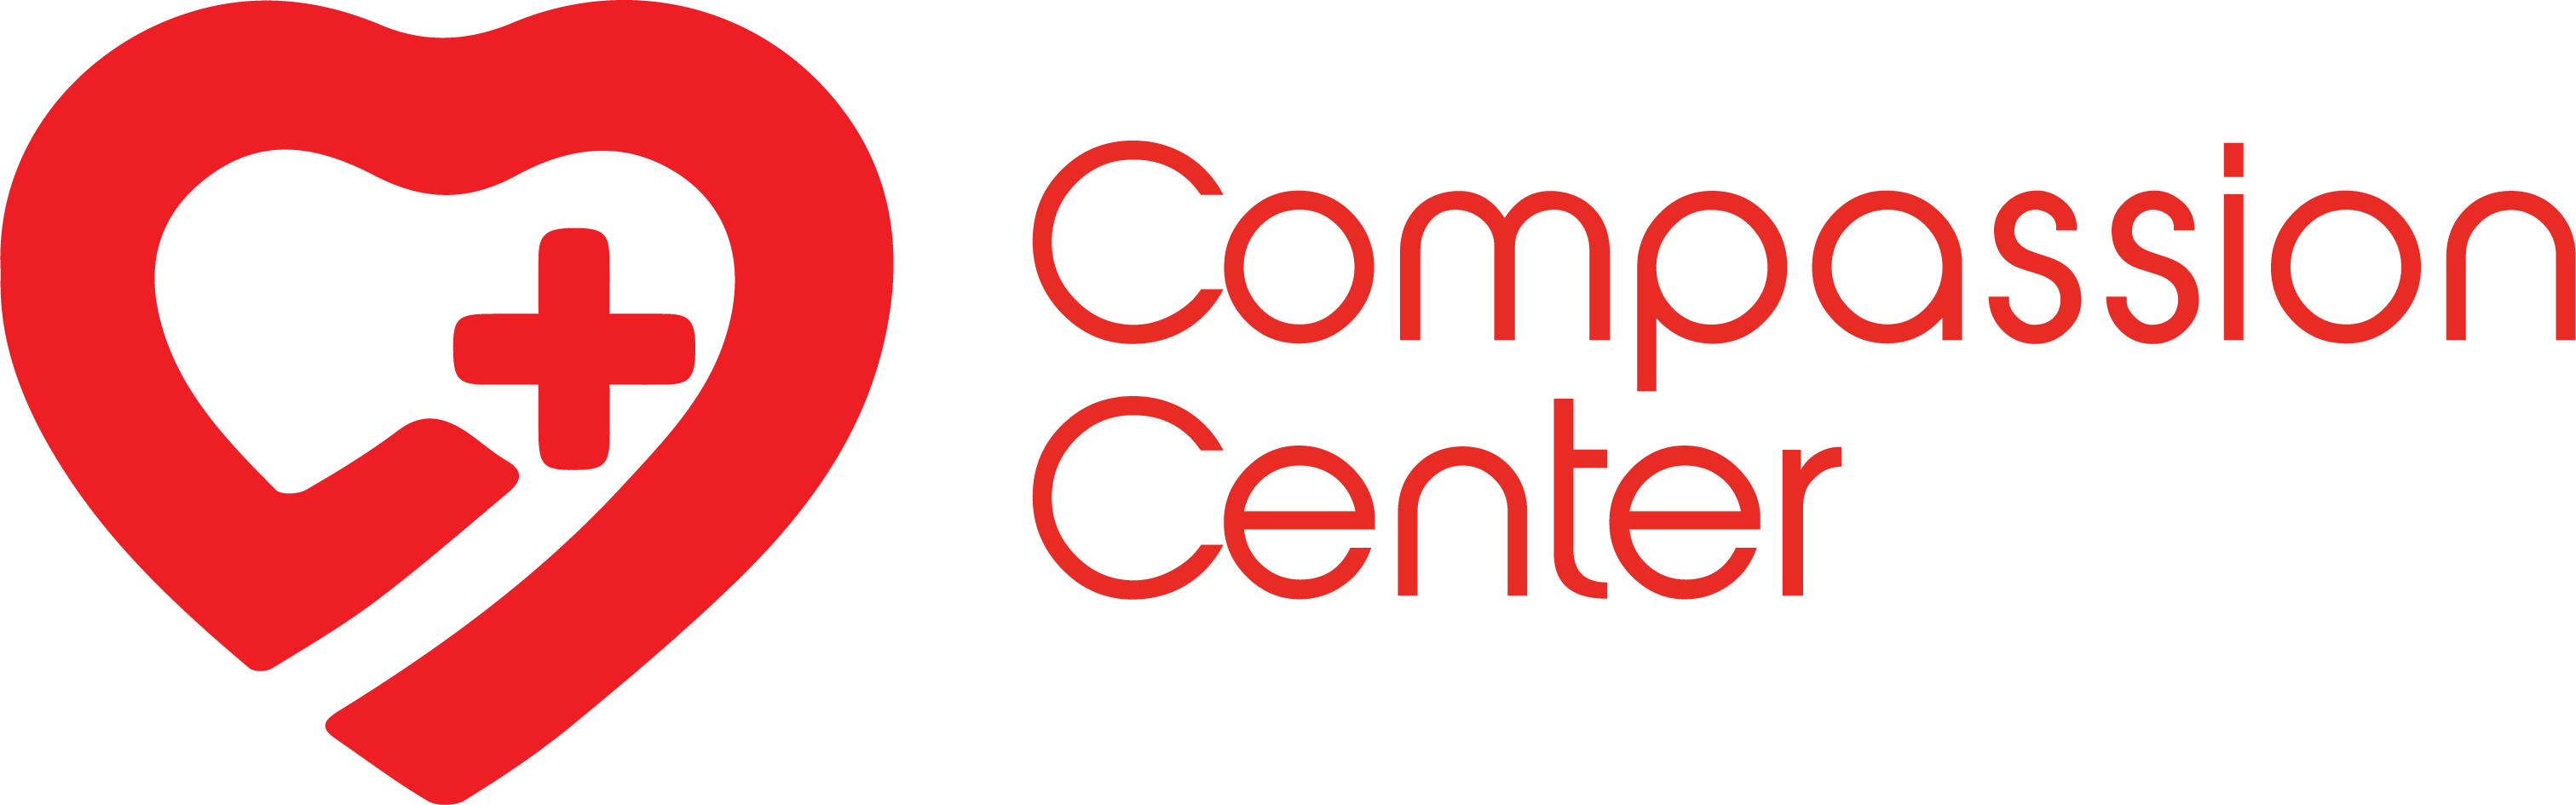 Compassion Center Logo